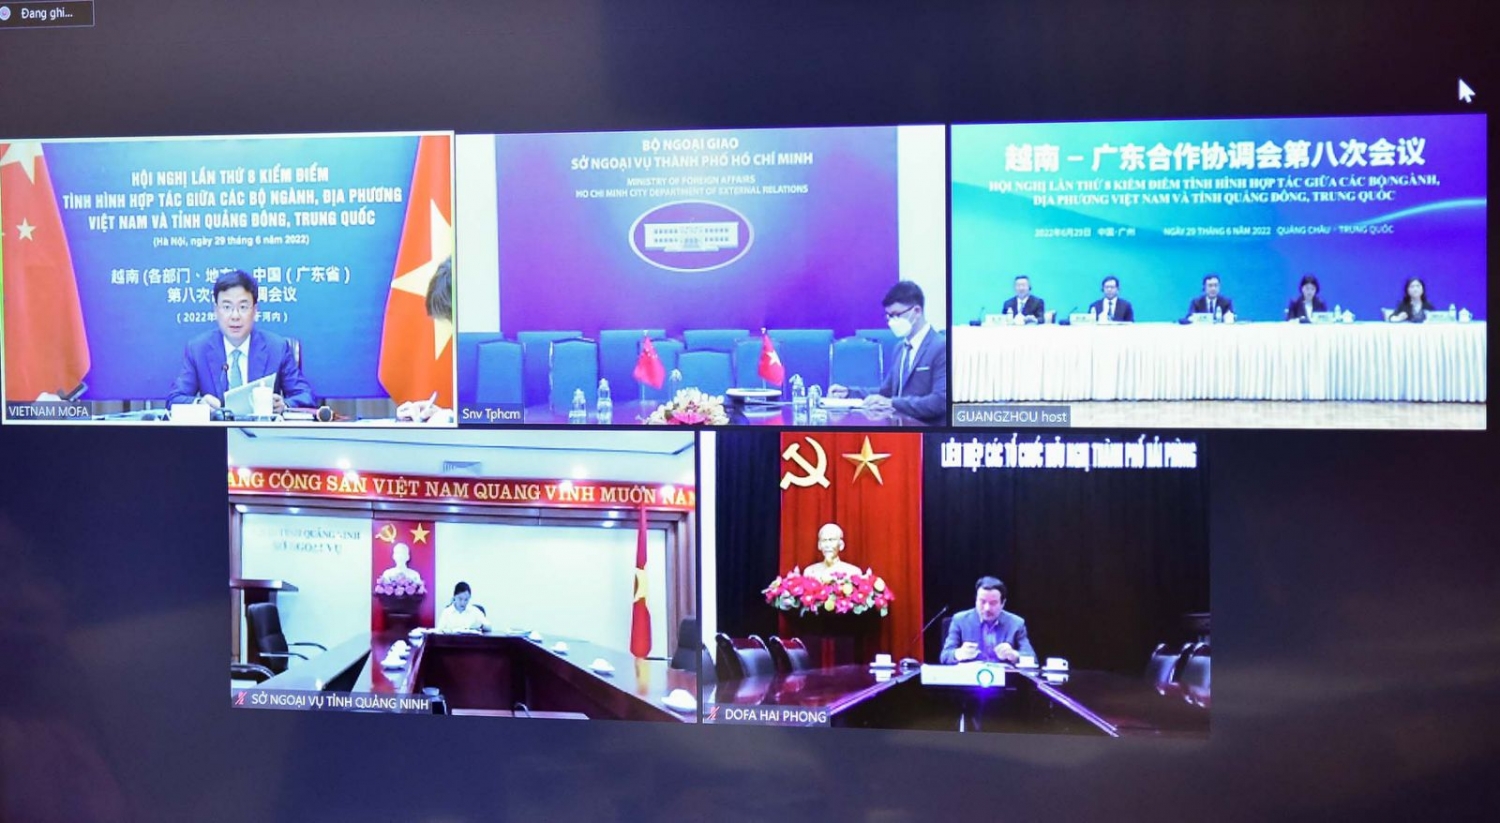 Hội nghị lần thứ 8 kiểm điểm tình hình hợp tác giữa các bộ ngành, địa phương Việt Nam và tỉnh Quảng Đông, Trung Quốc